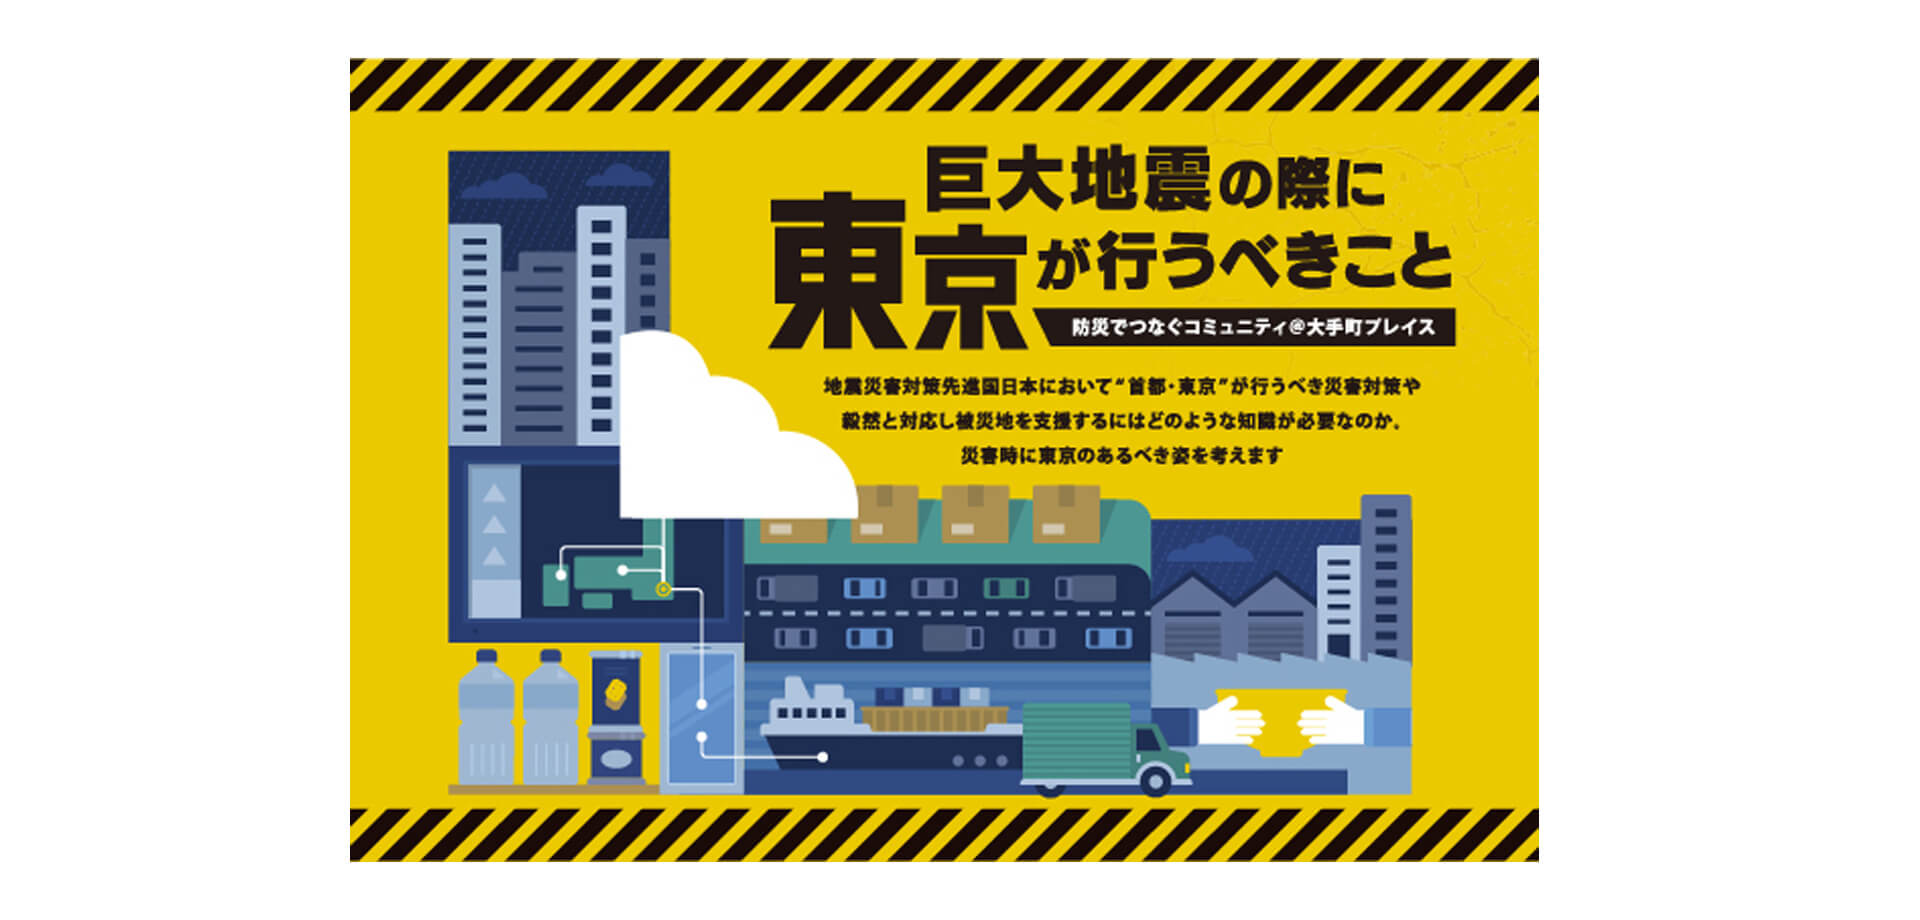 巨大地震の際に東京が行うべきこと　防災でつなぐコミュニティ＠大手町プレイス バナー